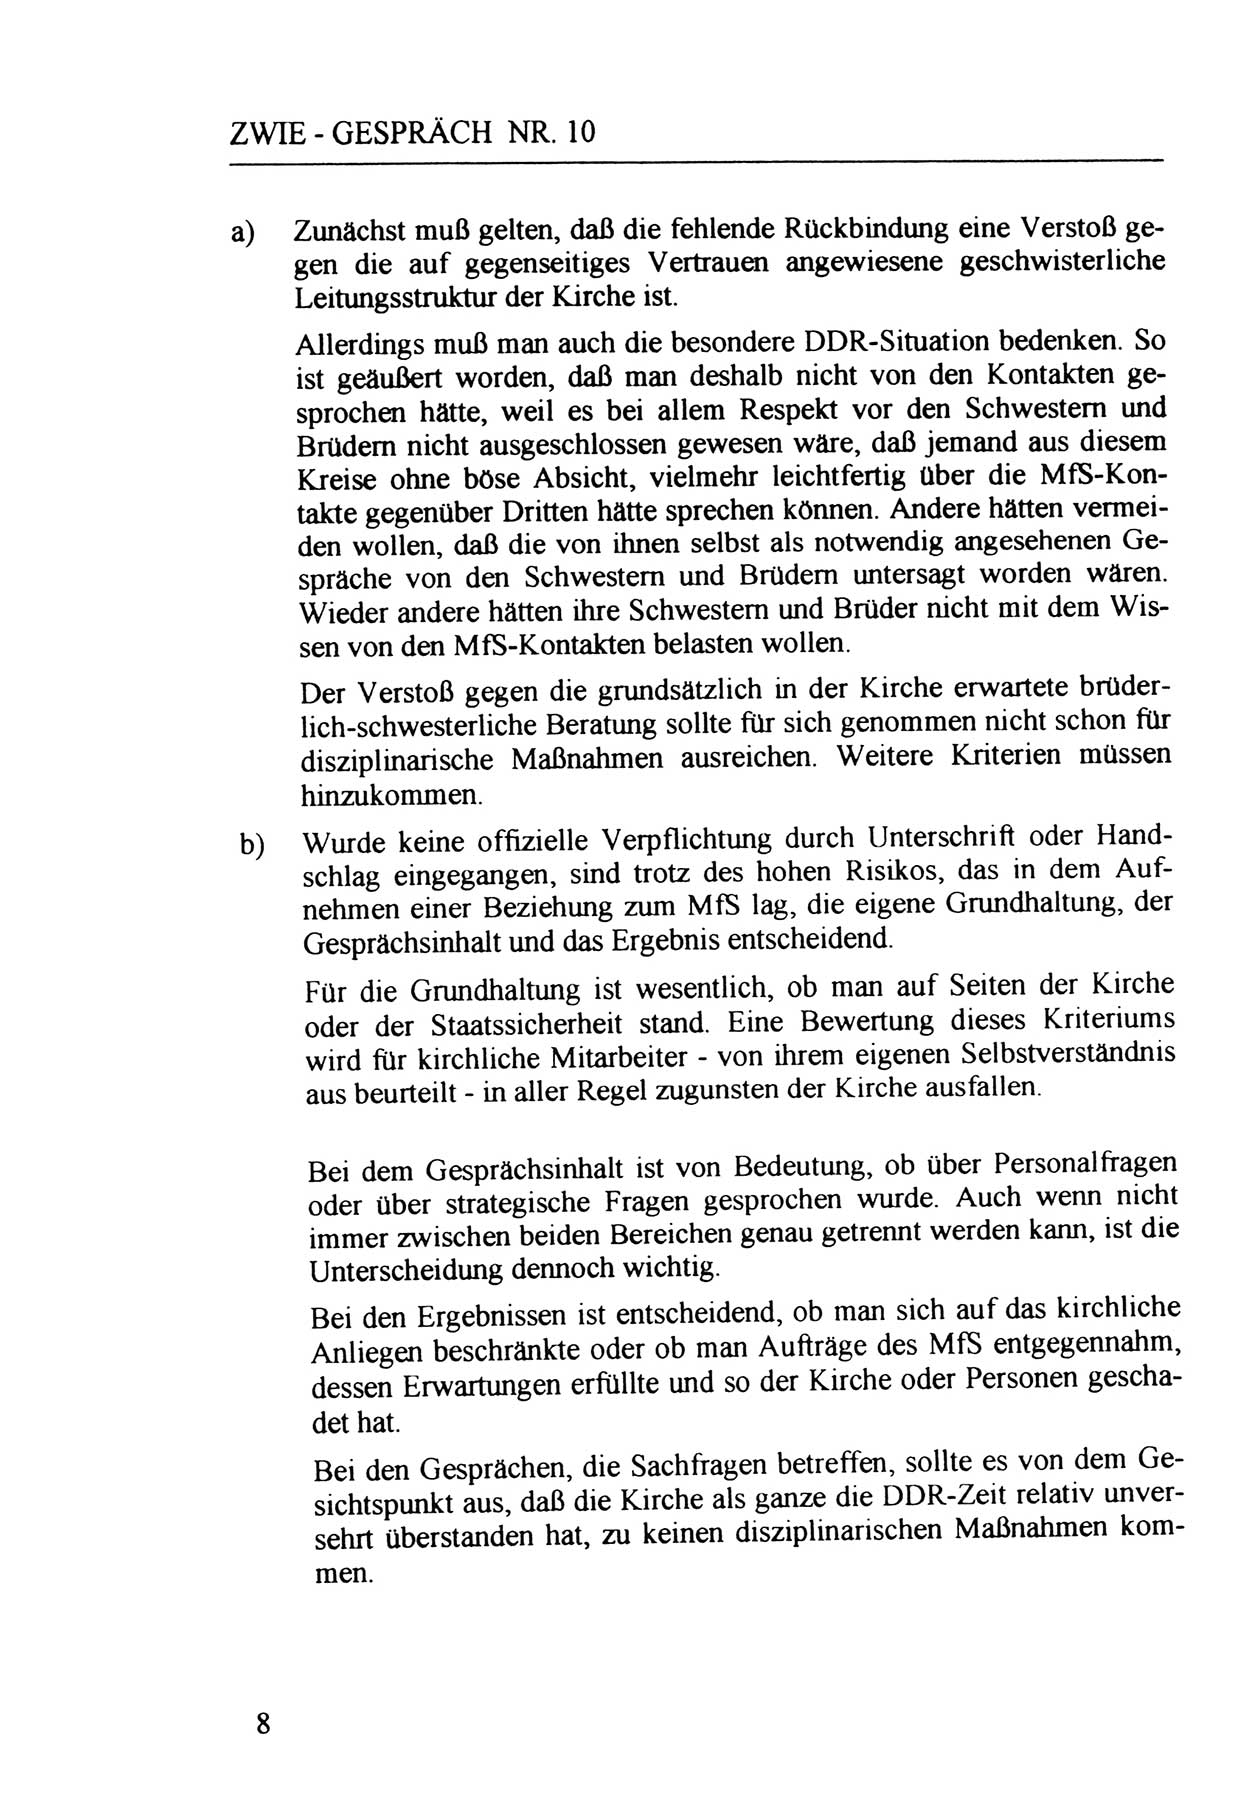 Zwie-Gespräch, Beiträge zur Aufarbeitung der Staatssicherheits-Vergangenheit [Deutsche Demokratische Republik (DDR)], Ausgabe Nr. 10, Berlin 1992, Seite 8 (Zwie-Gespr. Ausg. 10 1992, S. 8)